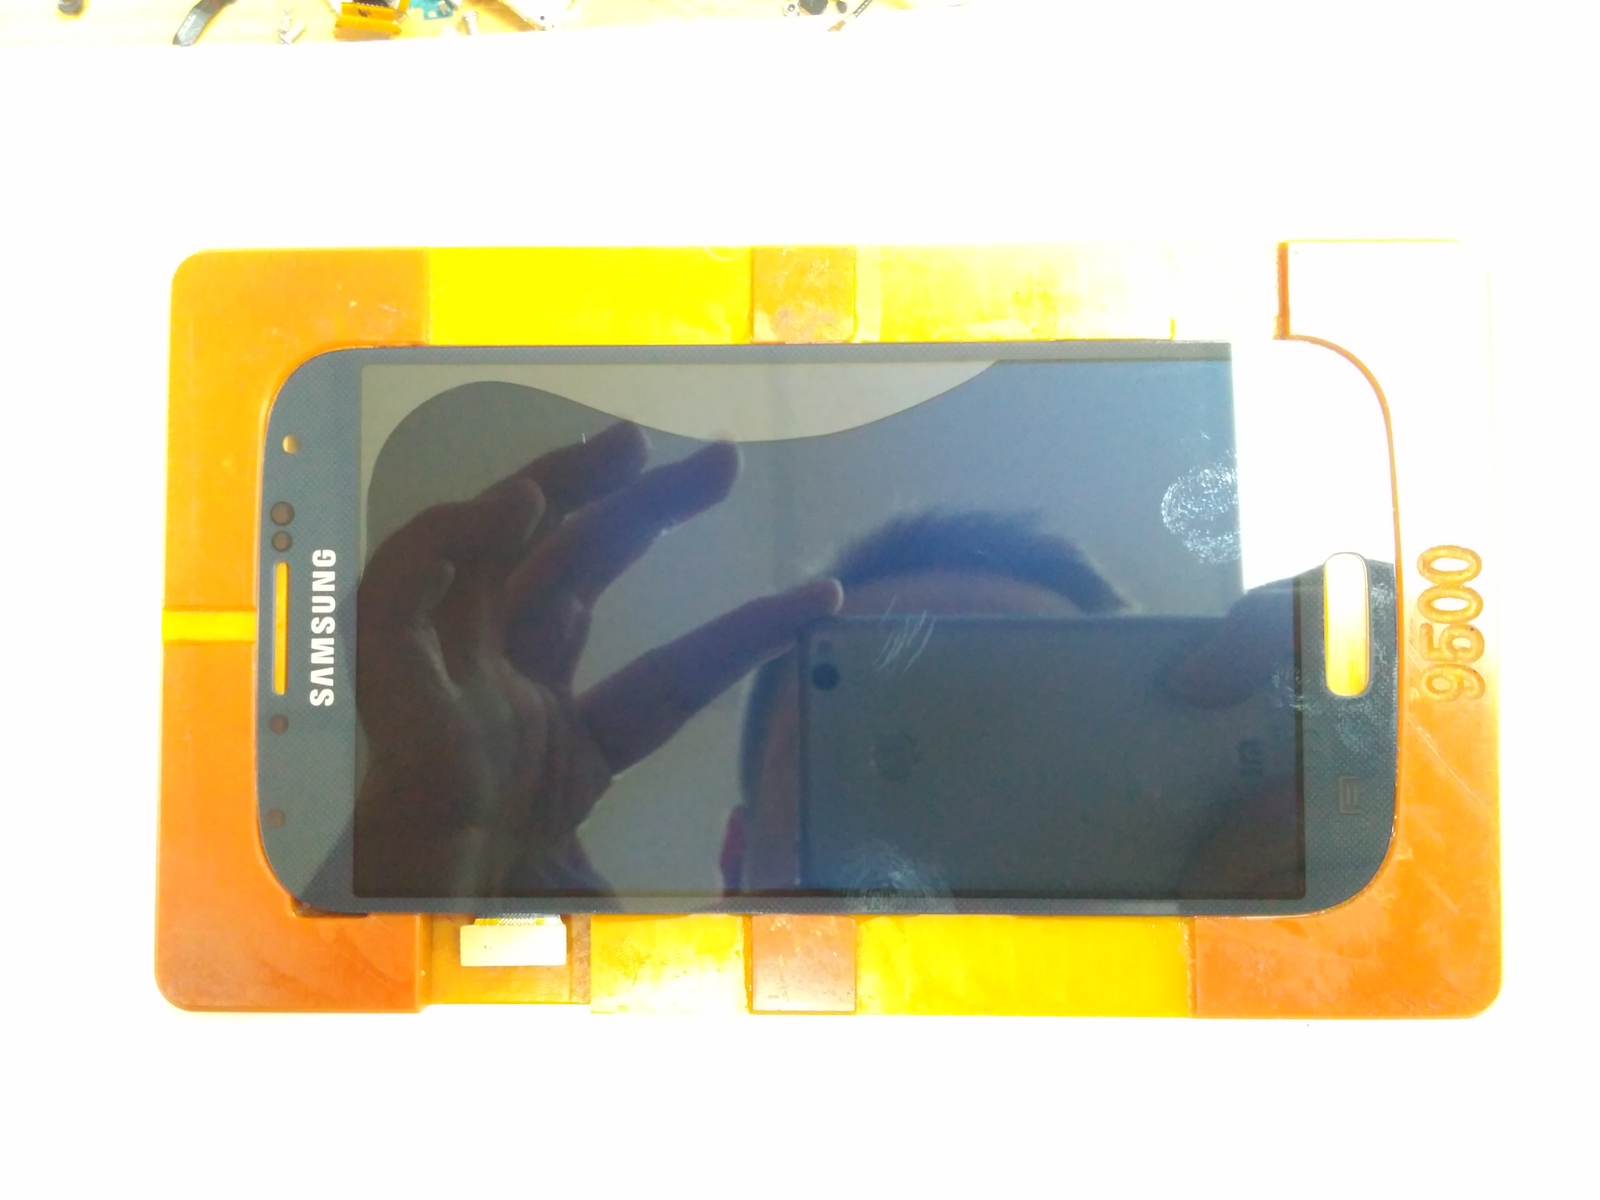 Galaxy S4 glass change. - My, Repair of equipment, Telephone, Longpost